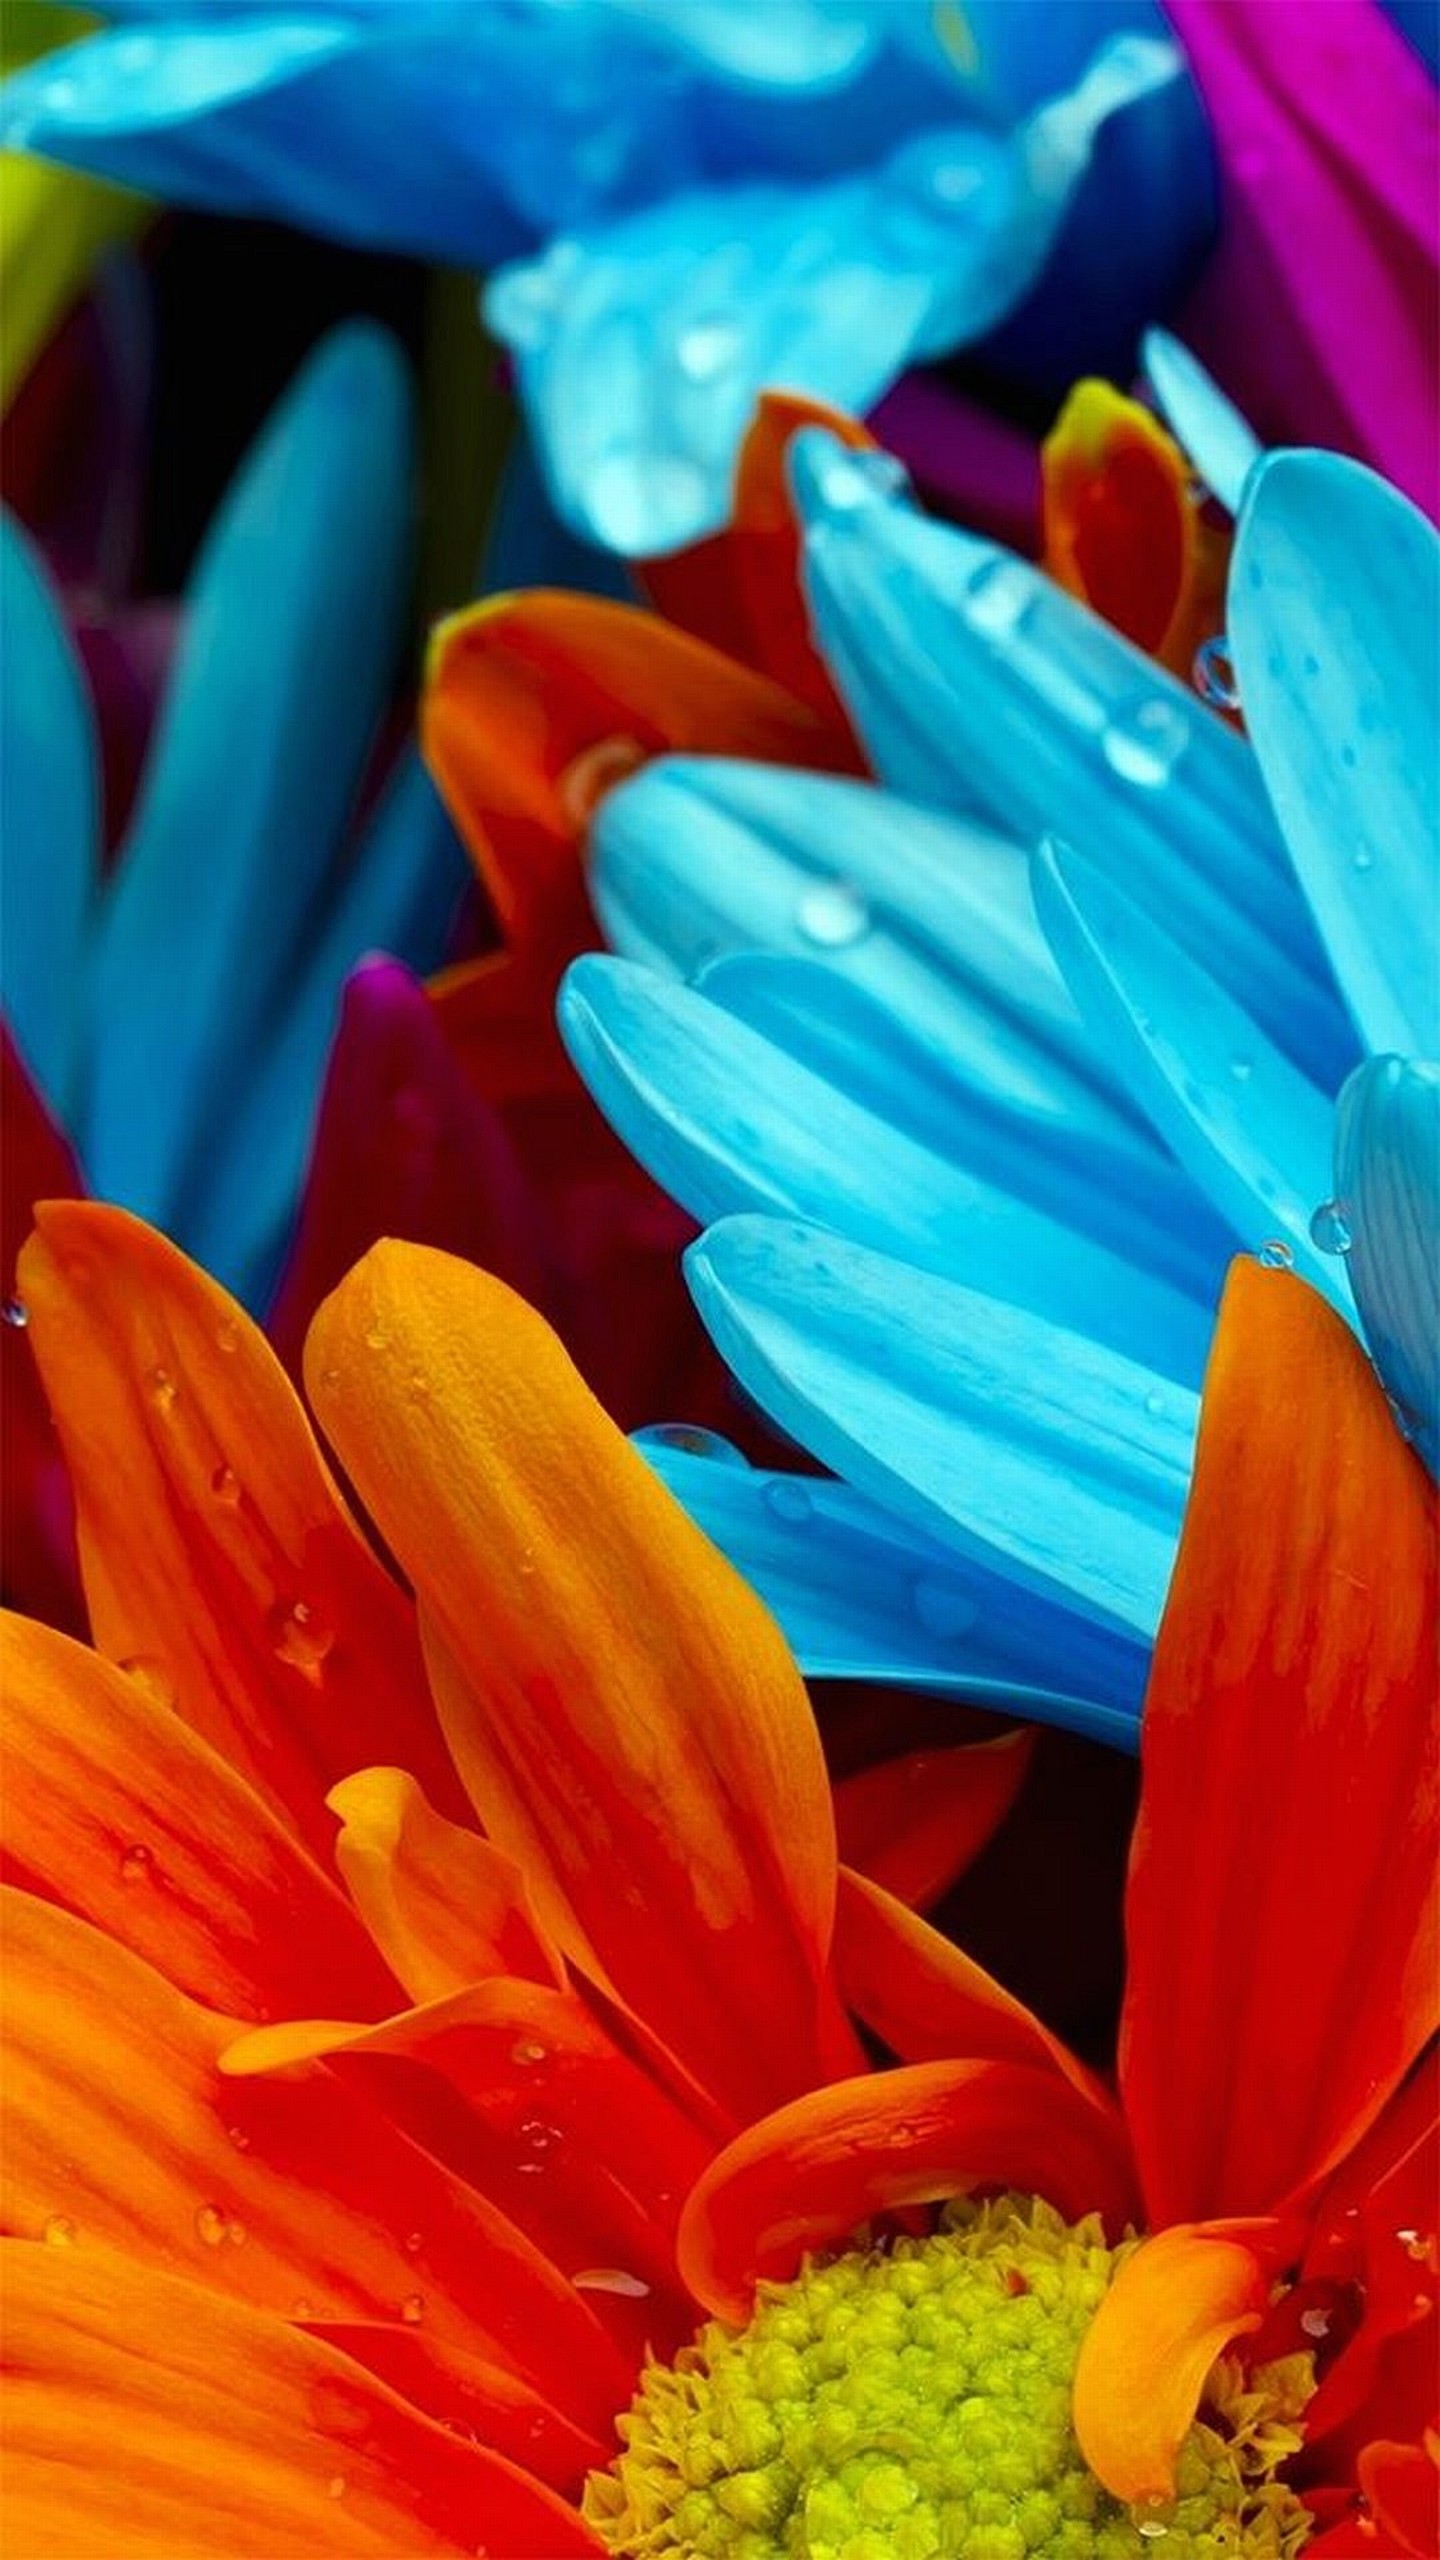 sfondo di lg g4,petalo,blu,arancia,fiore,avvicinamento